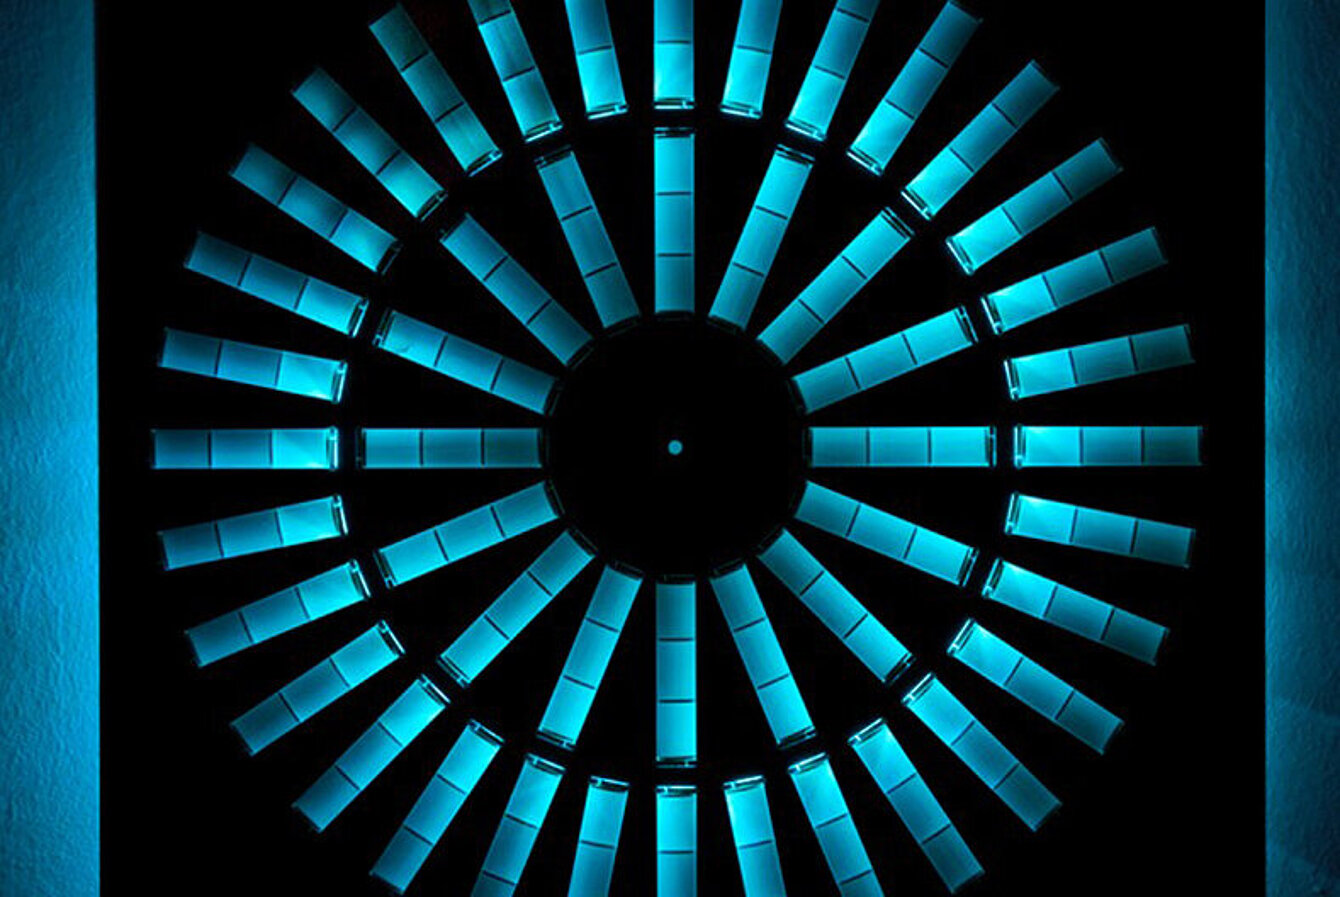 Foto von einer Kunstinstallation: Aus einer schwarzen Platte sind kreisförmig Rechtecke ausgeschnitten. Dahinter ist ein blaues Licht, dass durch die Aussparrungen fällt. 